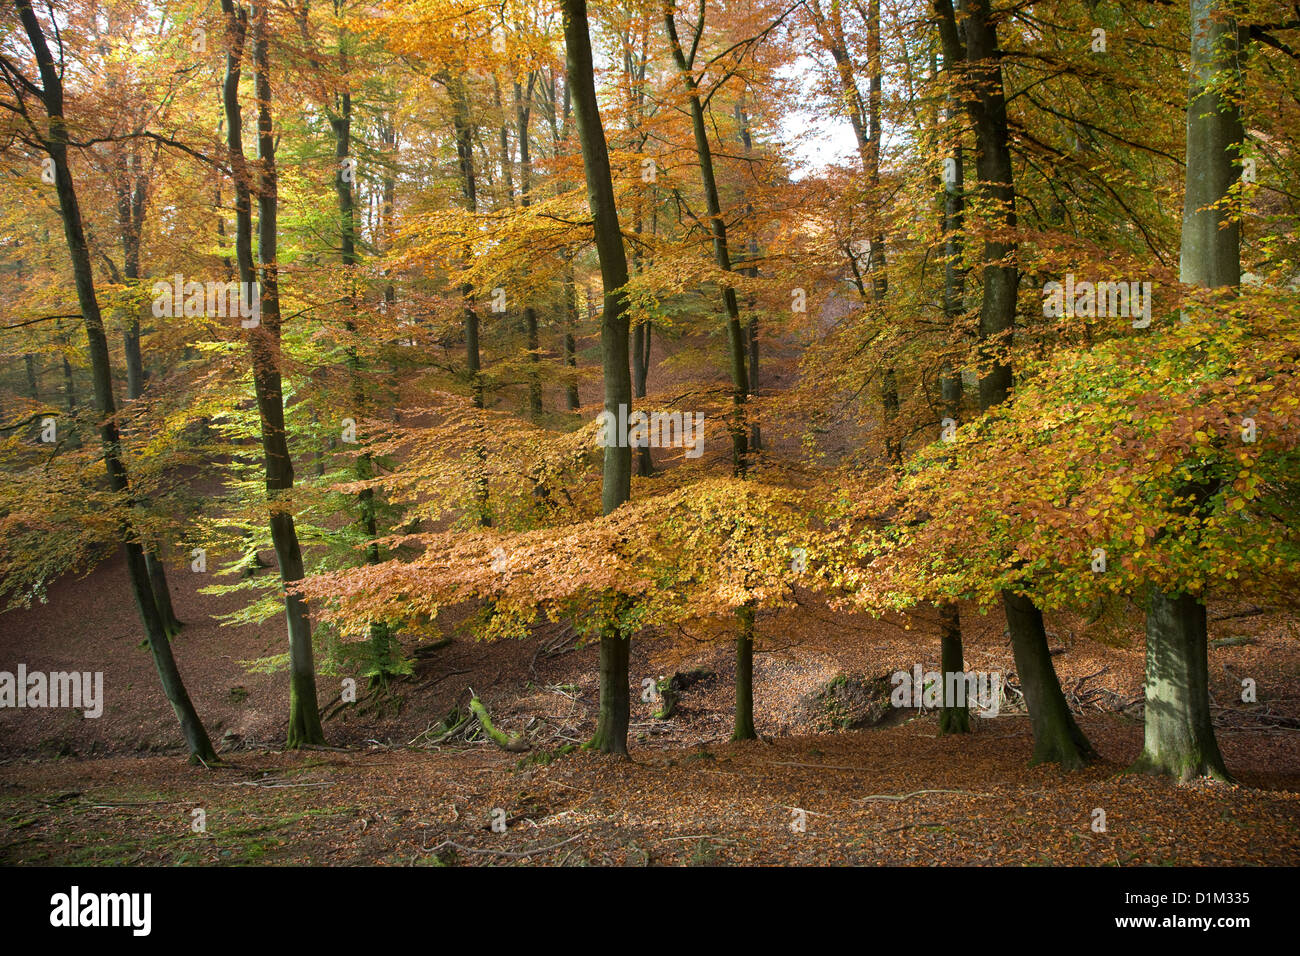 Les hêtres en forêt feuillue avec le feuillage en couleurs d'automne en automne Banque D'Images